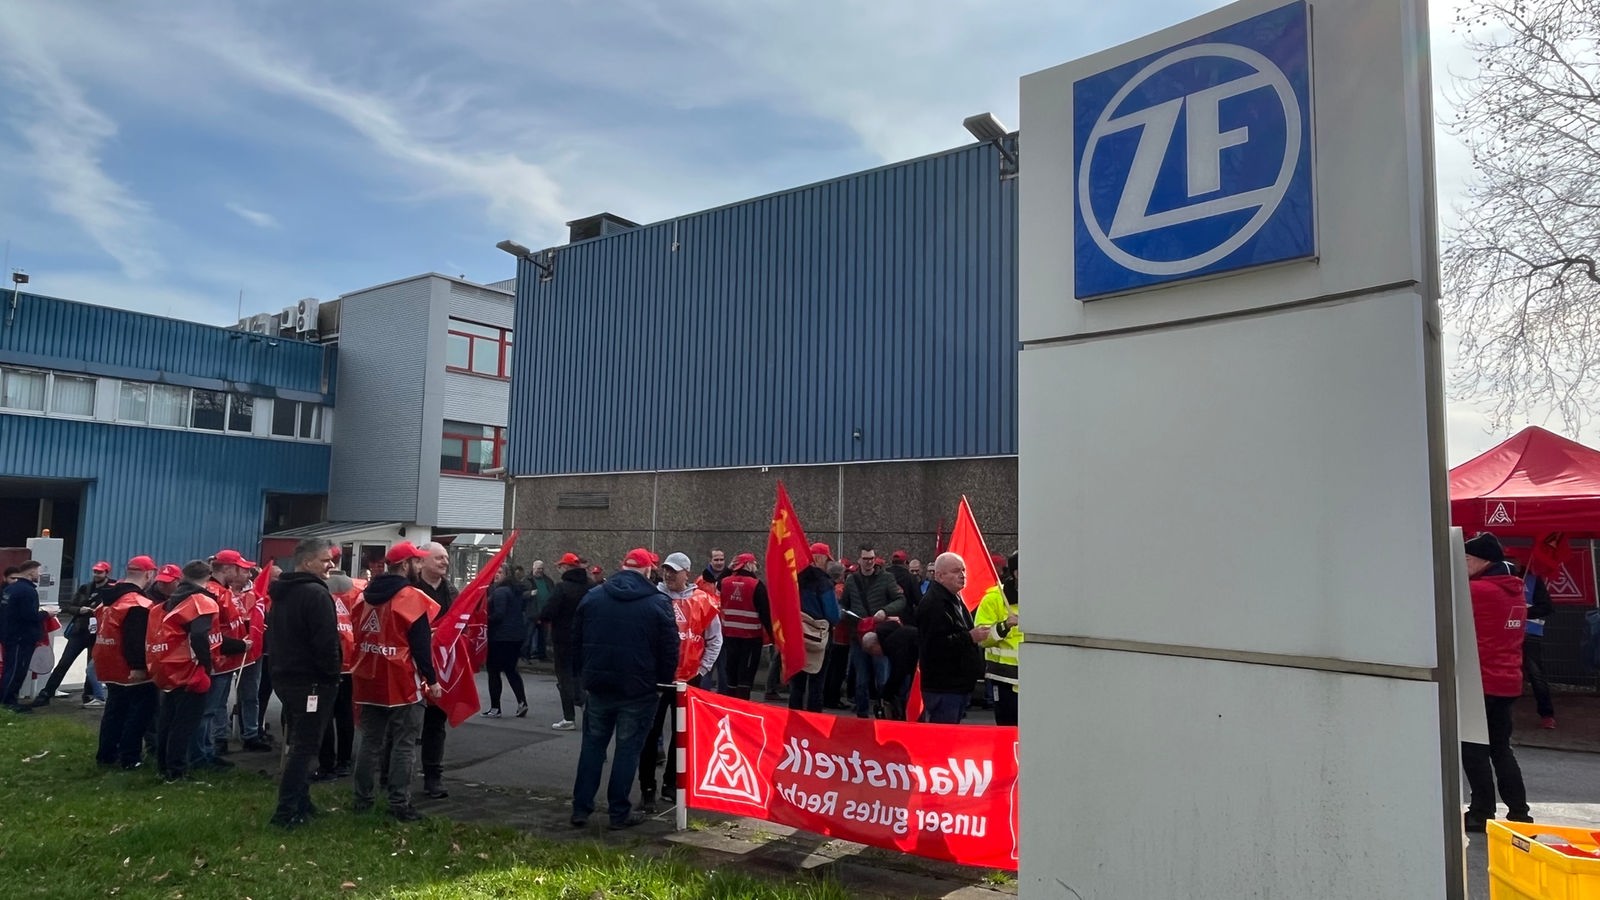 Autozulieferer ZF streicht massiv Stellen – auch Jobs in NRW betroffen